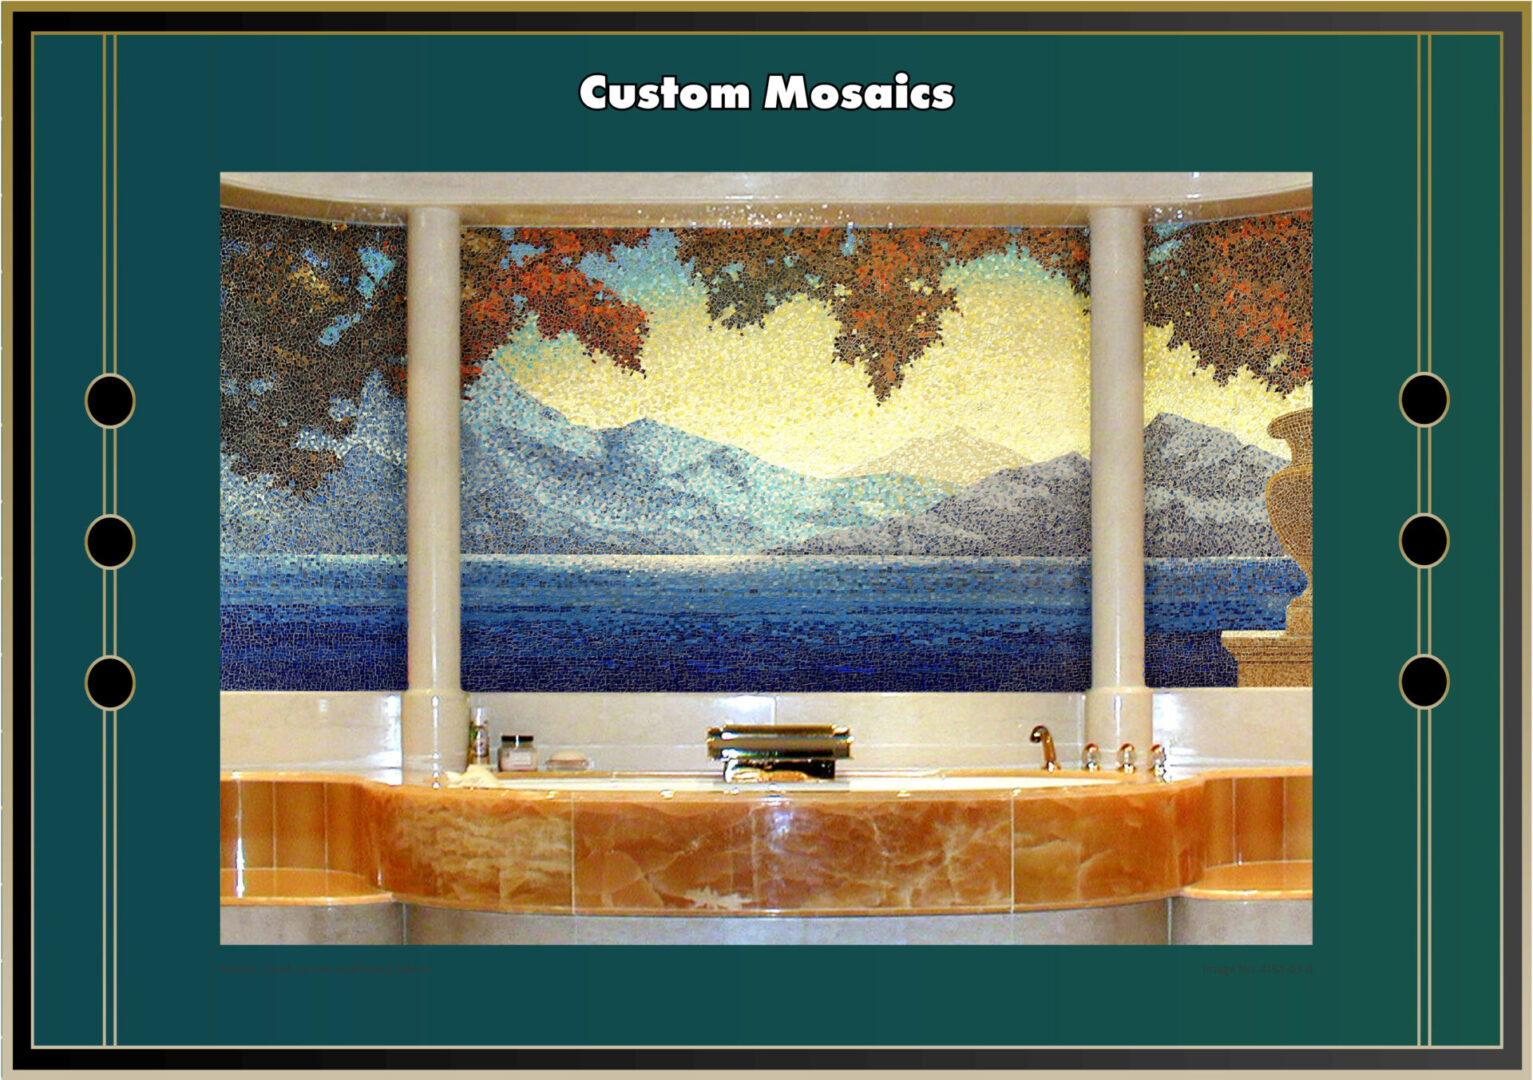 Beautifully designed Custom Mosaic reflecting nature